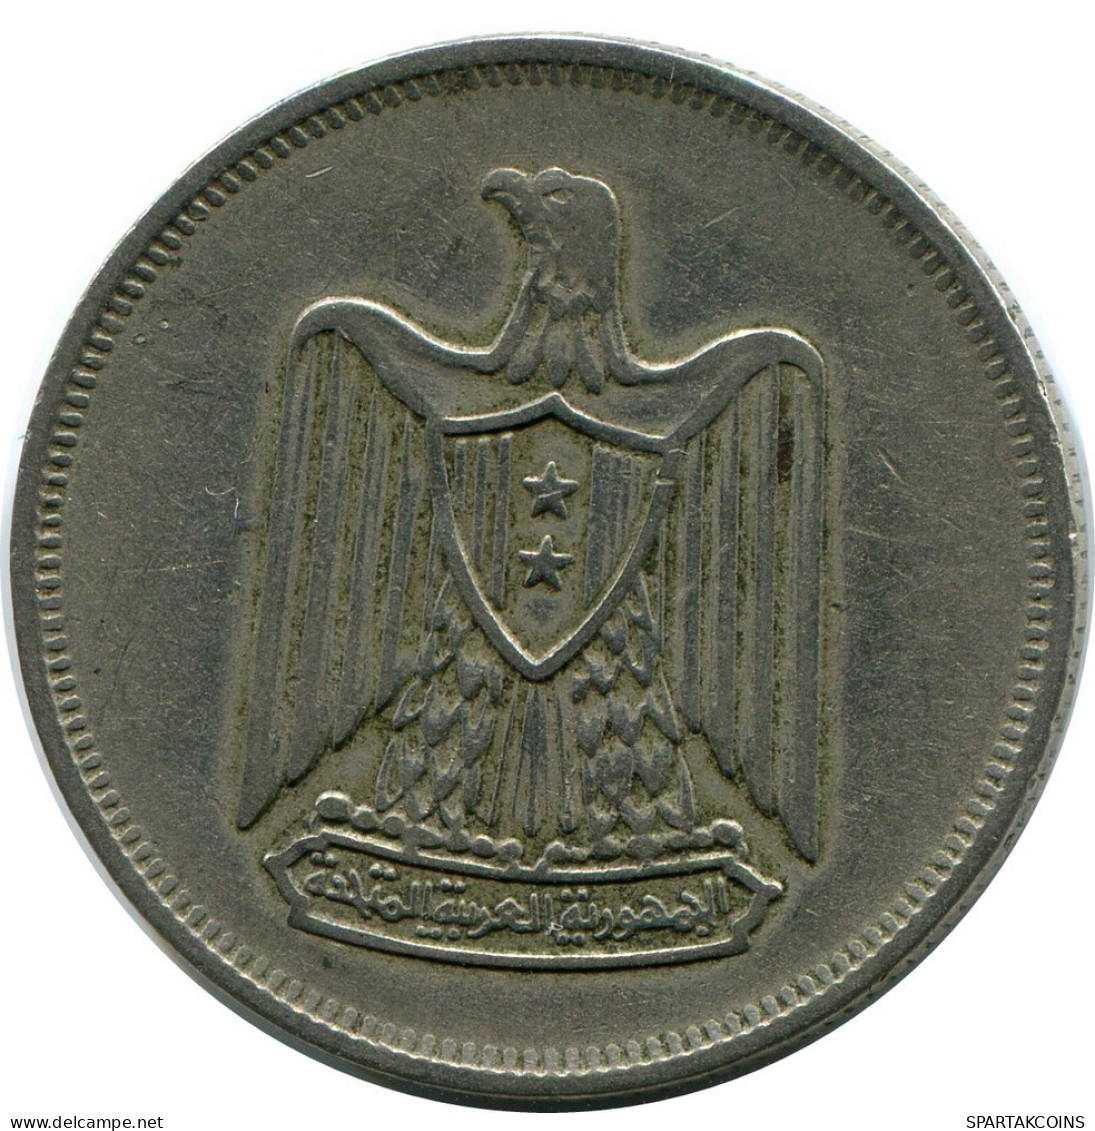 10 QIRSH 1967 EGYPT Islamic Coin #AP990.U.A - Egypte